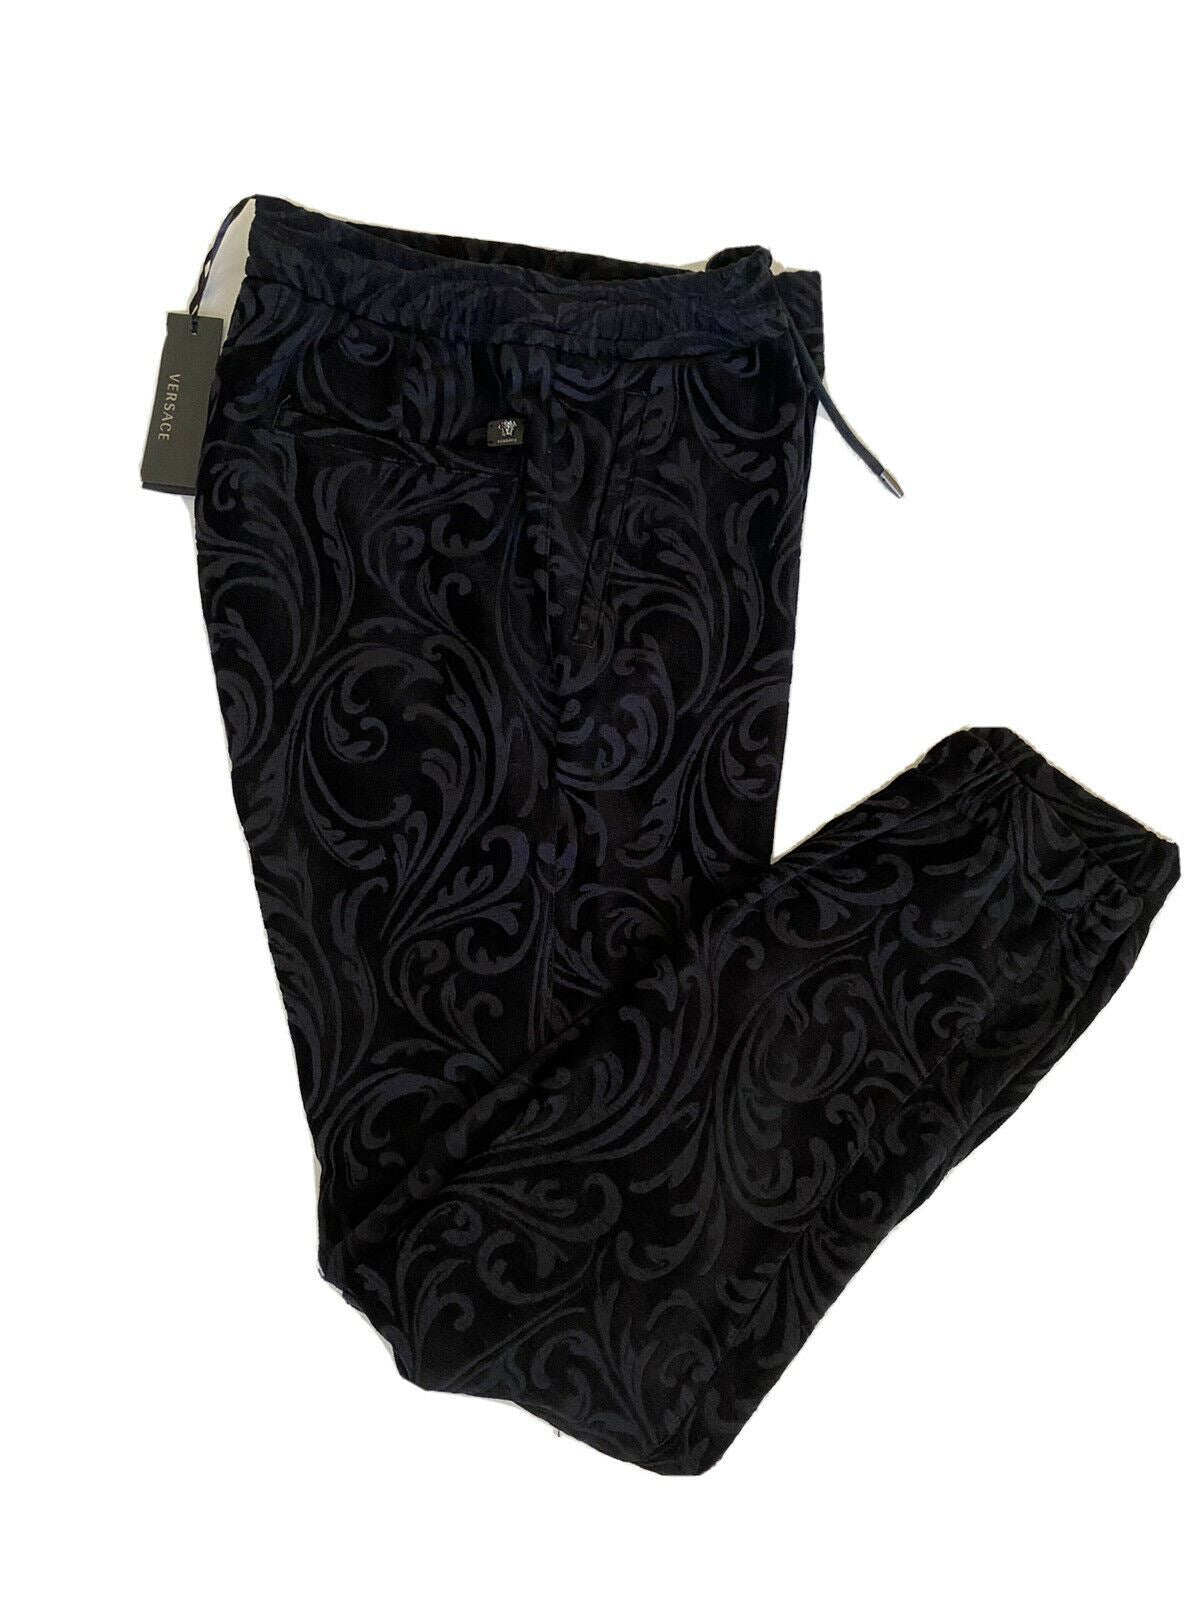 Neu mit Etikett: 975 $ Versace Schwarze Activewear-Hose für Herren, Größe M, hergestellt in Italien A79524